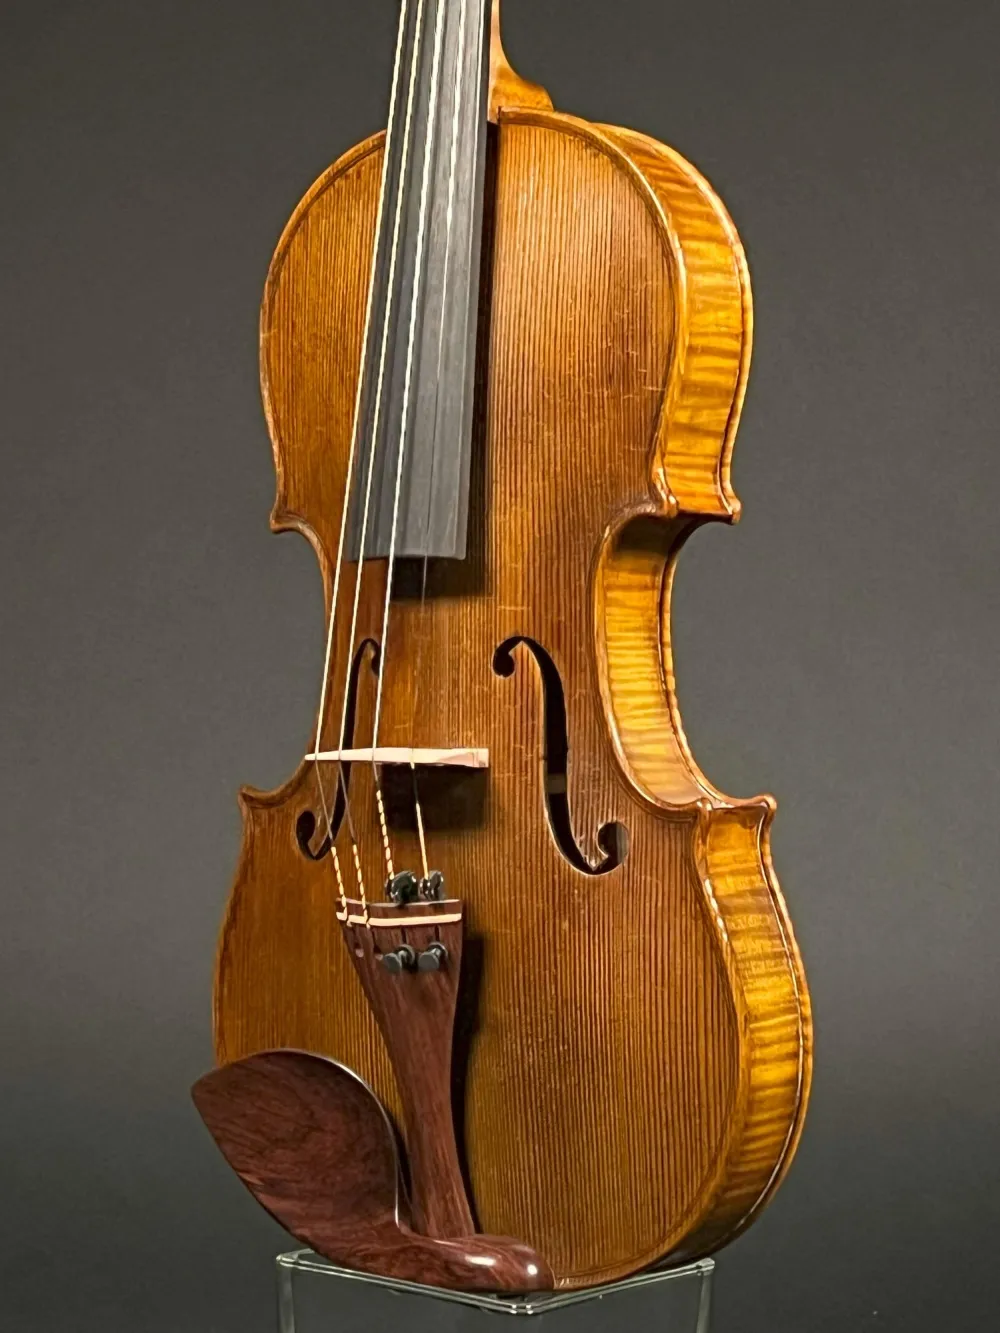 Decke-Zarge-Detailansicht einer Simon Joseph Meister Geige (Violine) Stradivarius Modell Handarbeit 2016